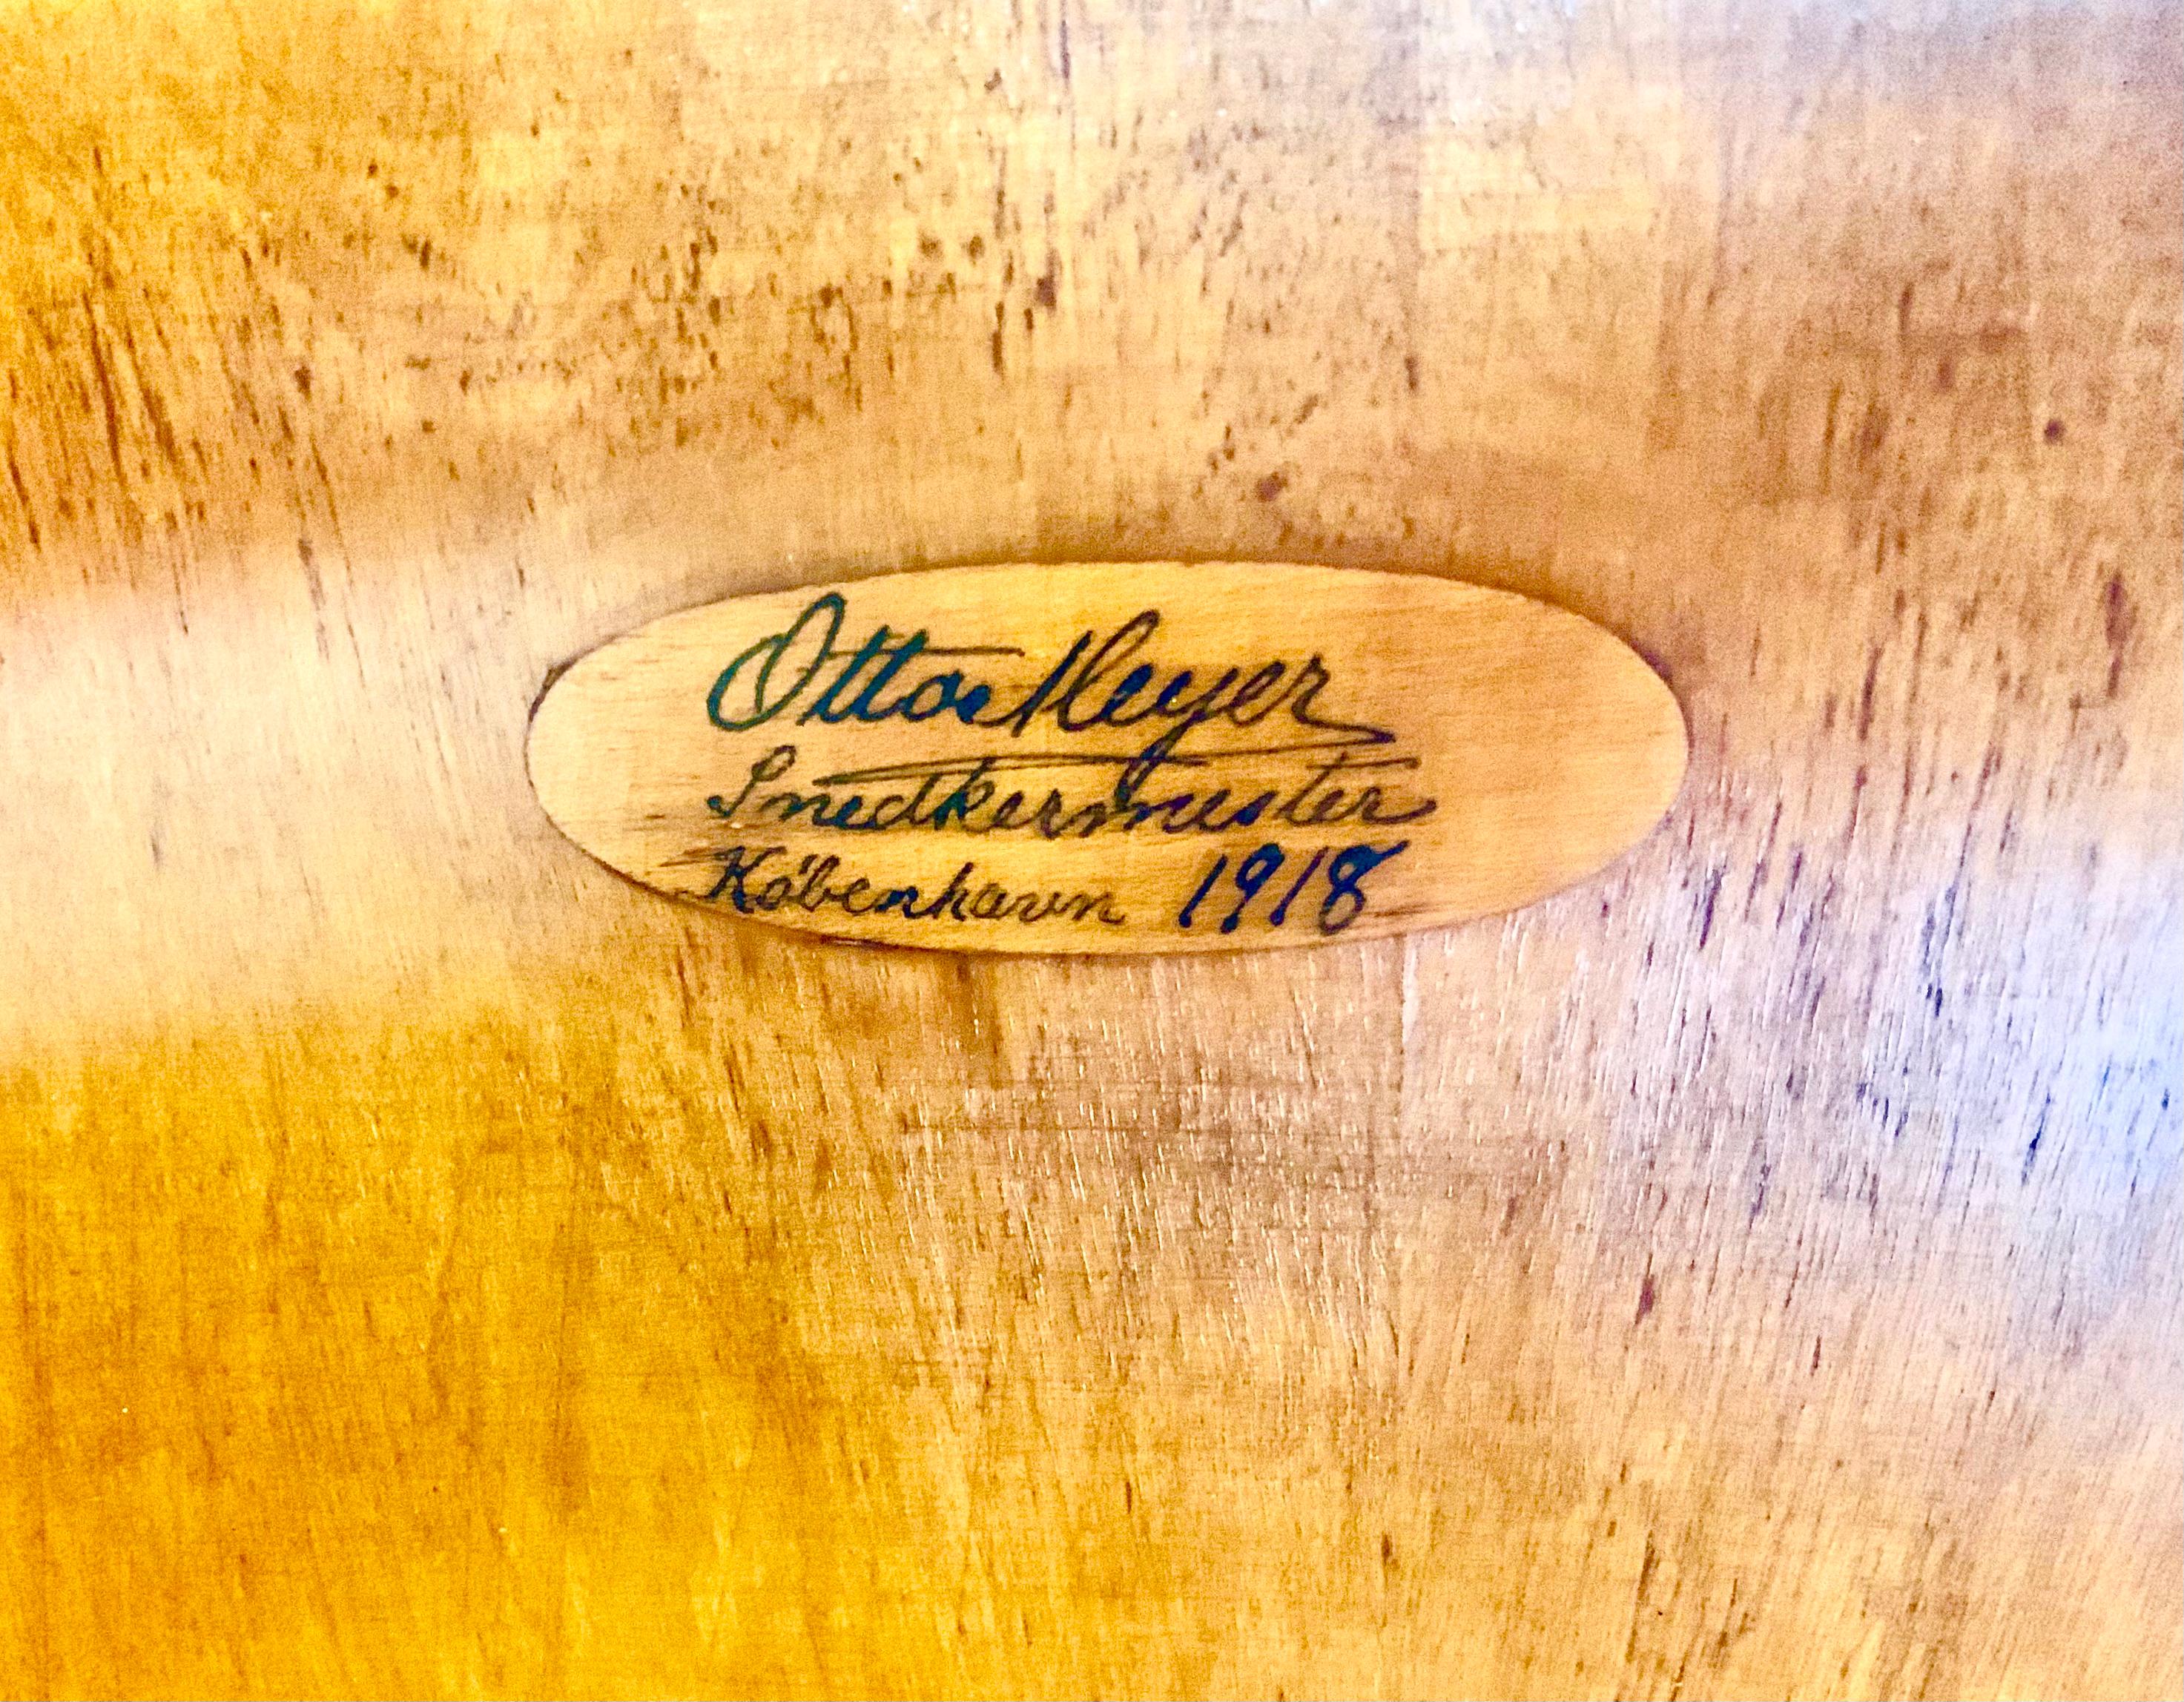 Remarquable buffet/bar en bouleau figuré demi-lune signé Otto Meyer, Snedkermester, Meyer, 1918.
Il comprend un grand tiroir supérieur central flanqué d'une paire de tiroirs latéraux en demi-lune, au-dessus d'un compartiment de rangement encastré à